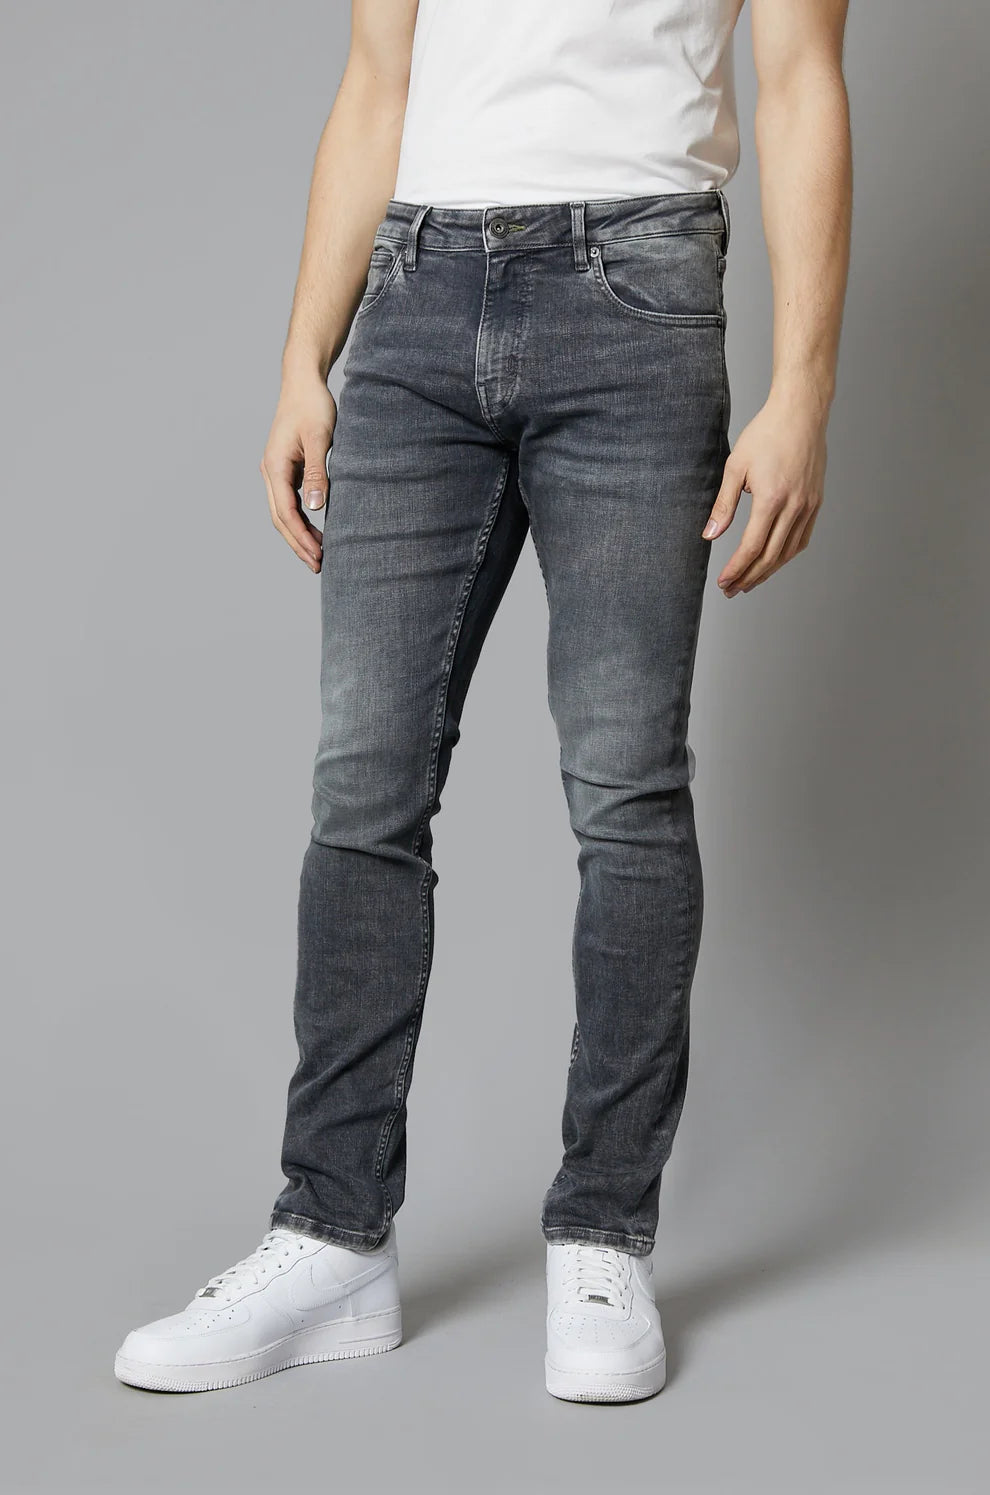 DML "Dakota" Slim Jeans in Mid Grey